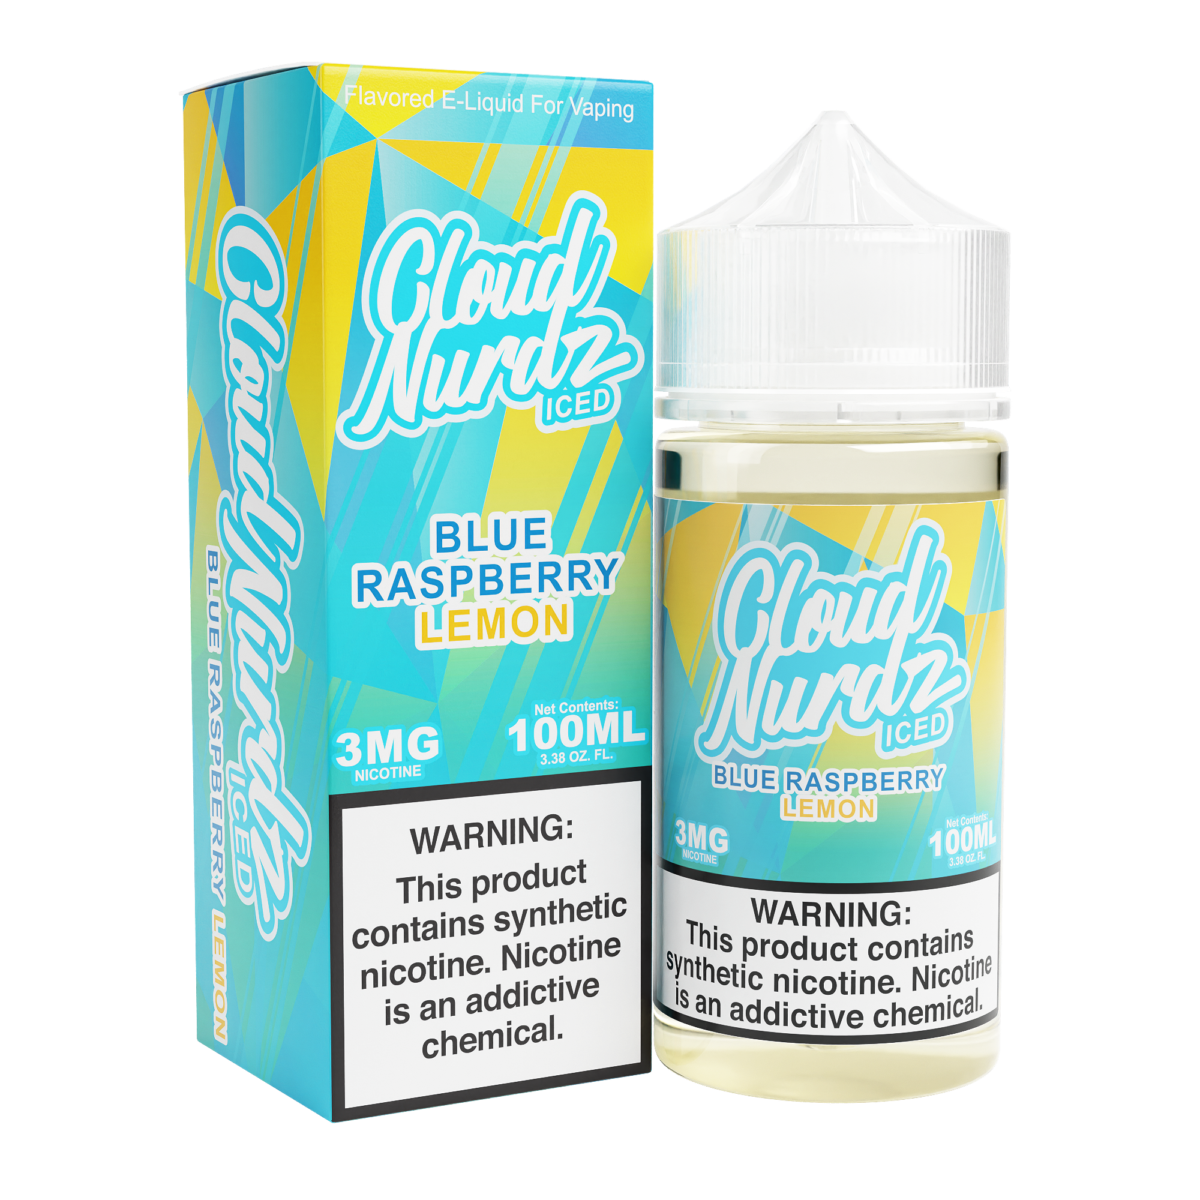 Blue Raspberry Lemon Iced by Cloud Nurdz Series 100mL with Packaging